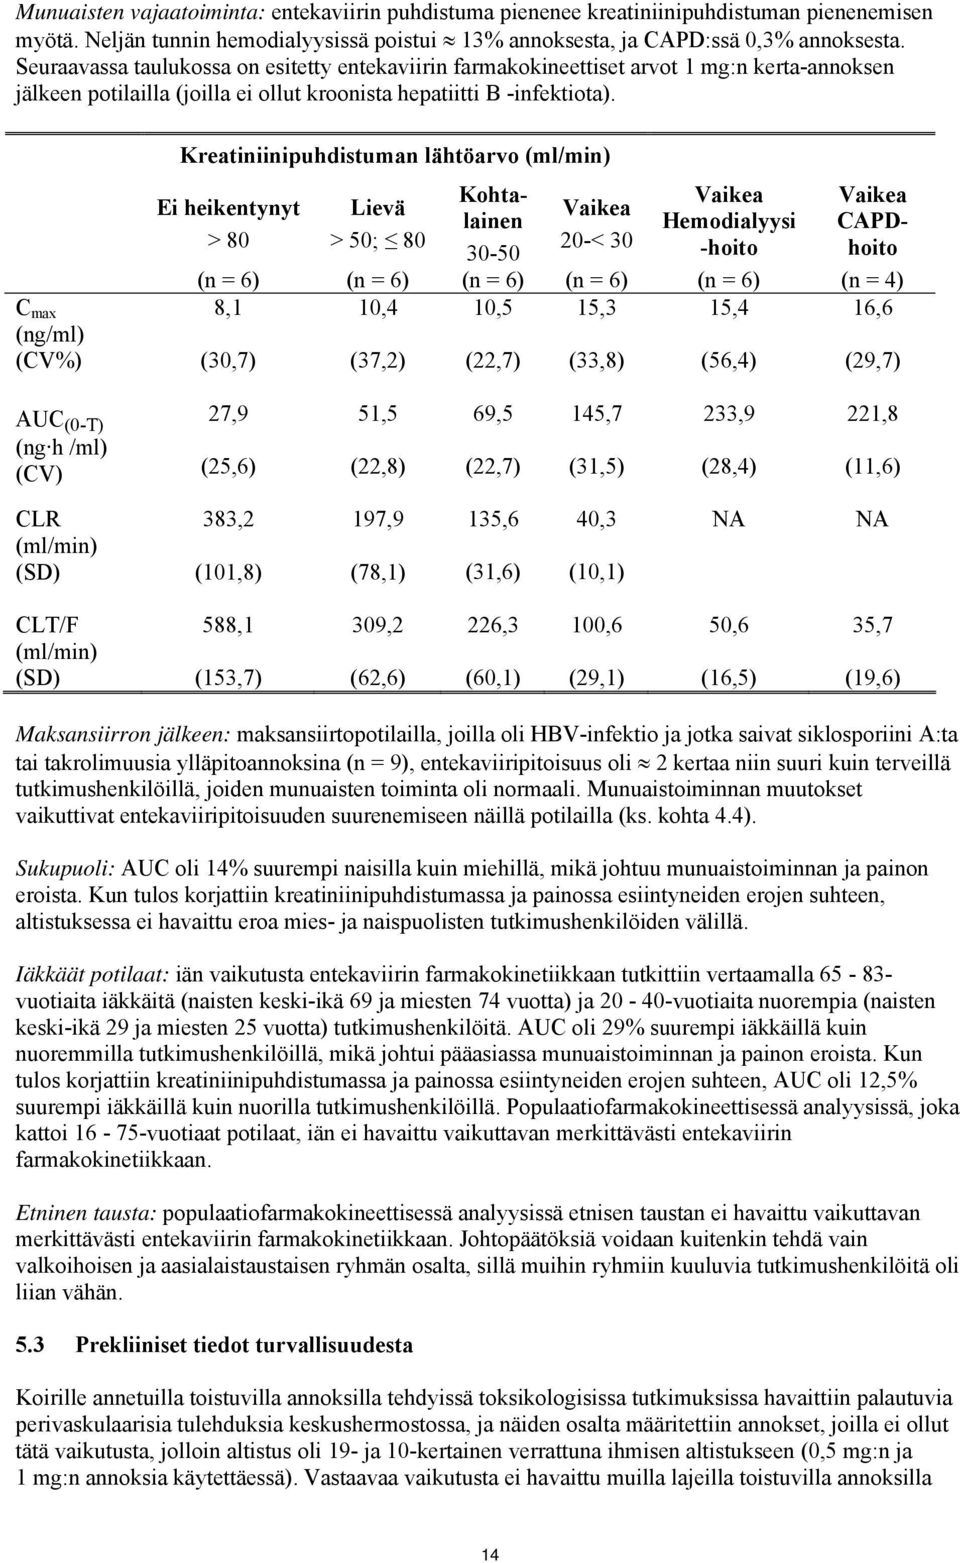 C max (ng/ml) (CV%) Kreatiniinipuhdistuman lähtöarvo (ml/min) Ei heikentynyt > 80 Lievä > 50; 80 Kohtalainen 30-50 Vaikea 20-< 30 Vaikea Hemodialyysi -hoito Vaikea CAPDhoito (n = 6) (n = 6) (n = 6)